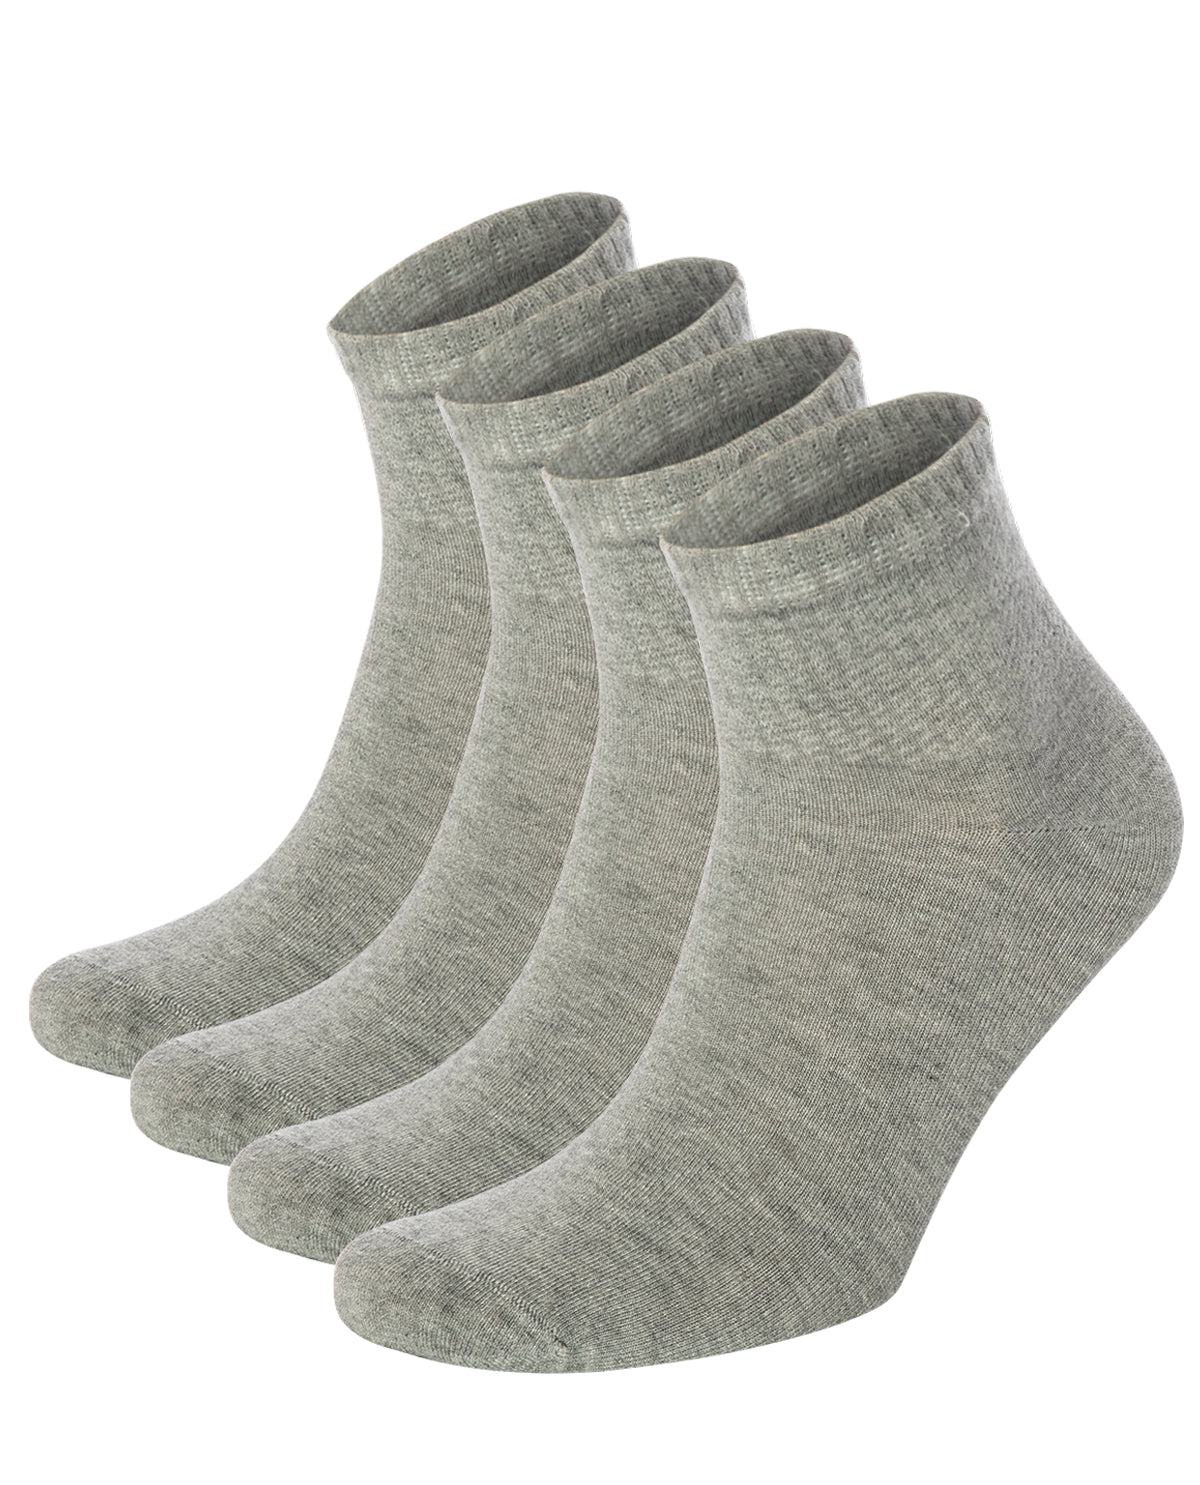 Women's Bamboo Ankle Socks, 4 Pack